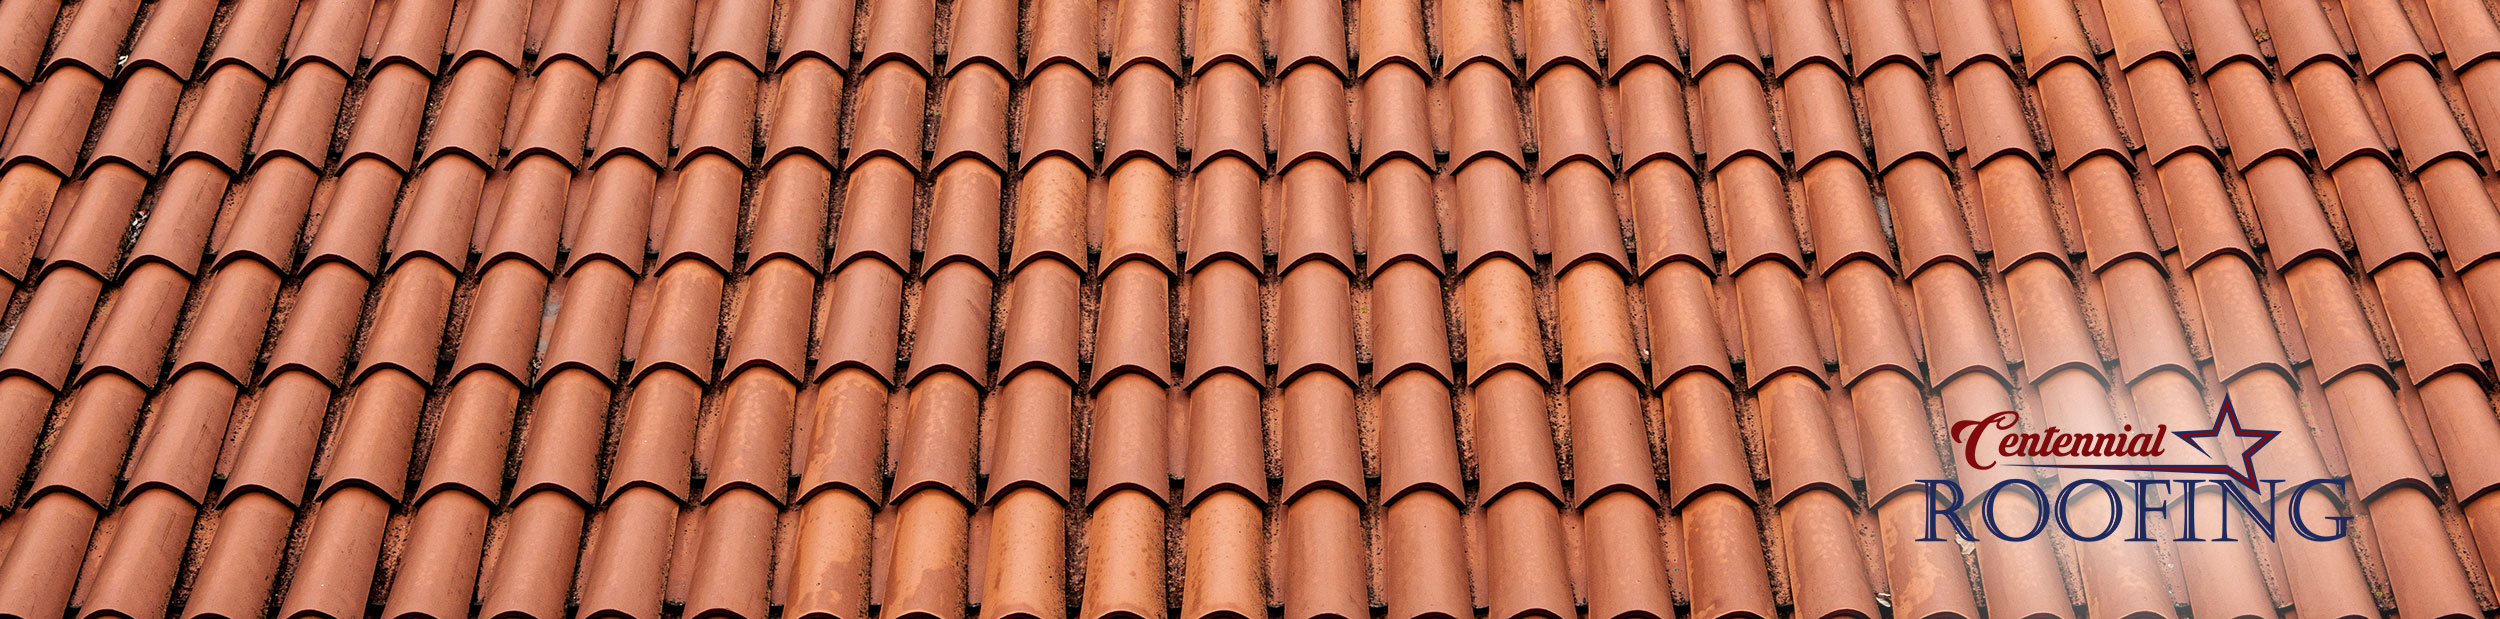 clay tiles